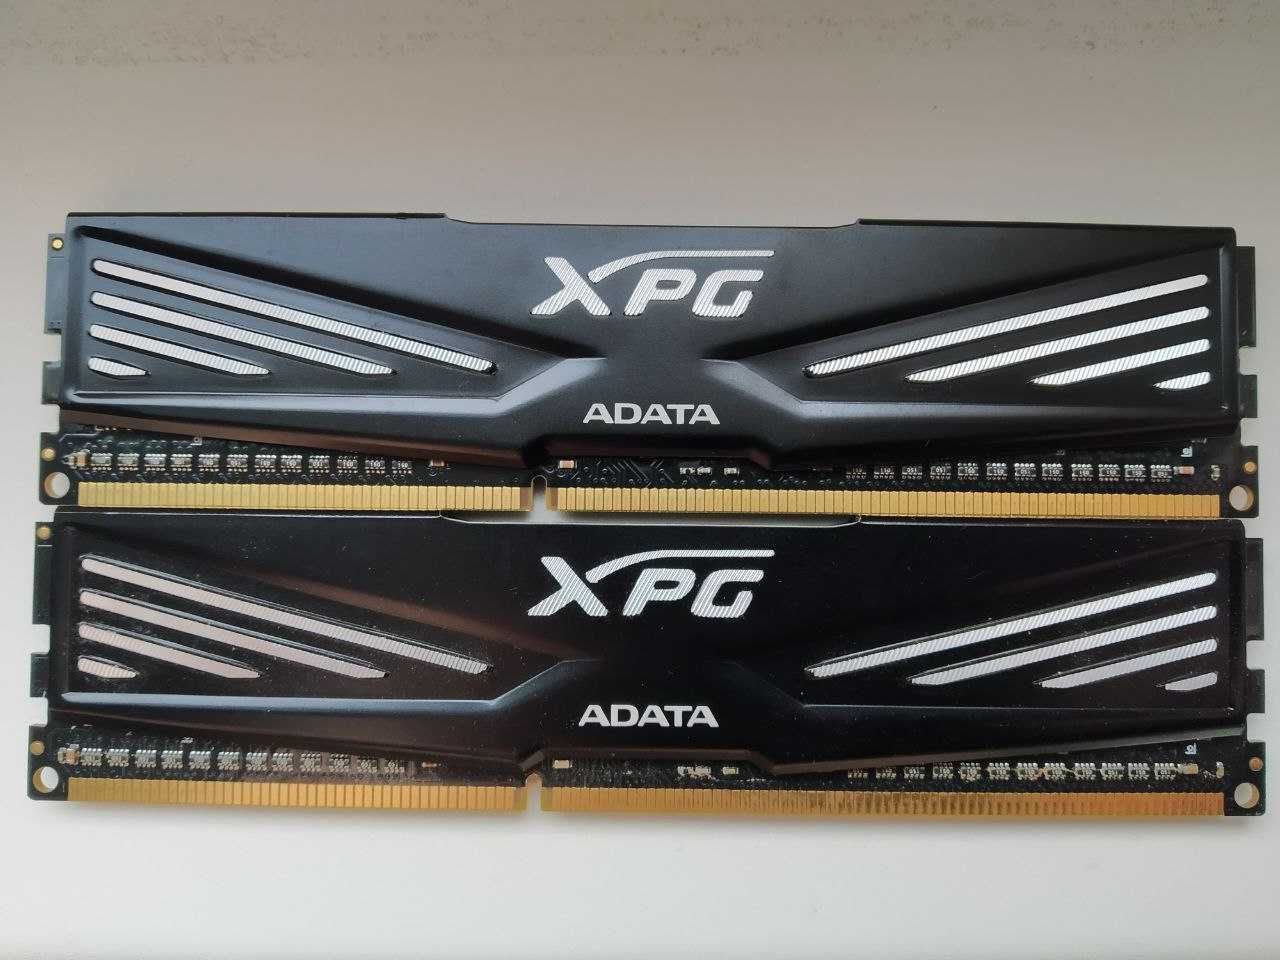 ADATA XPG Gaming DDR3 8GB(2x4GB) 1600MHz PC3-12800 (AX3U1600W4G9-DB)